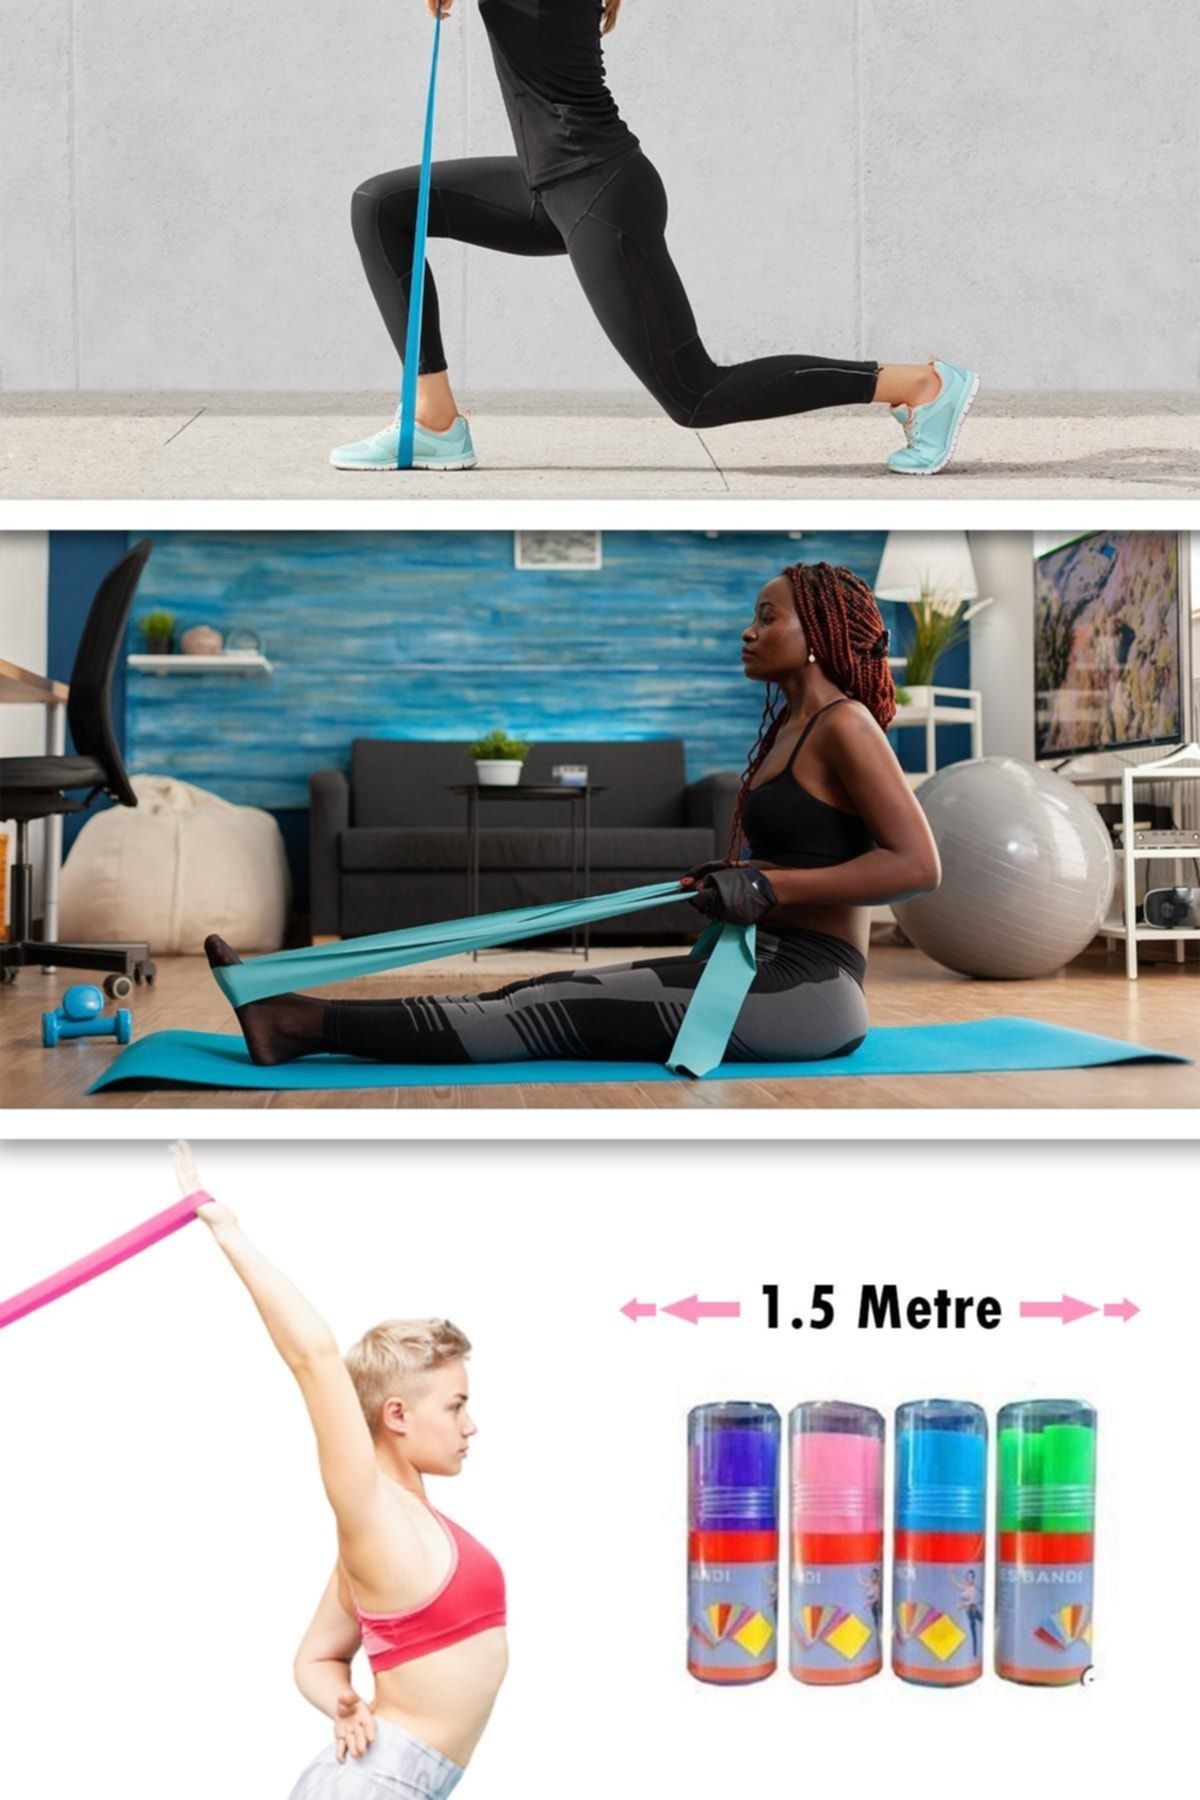 Hsport 1.5 Metre Dayanıklı Pilates Direnç Lastiği Yoga Ve Fitness Esneme  Bandı Fiyatı, Yorumları - Trendyol